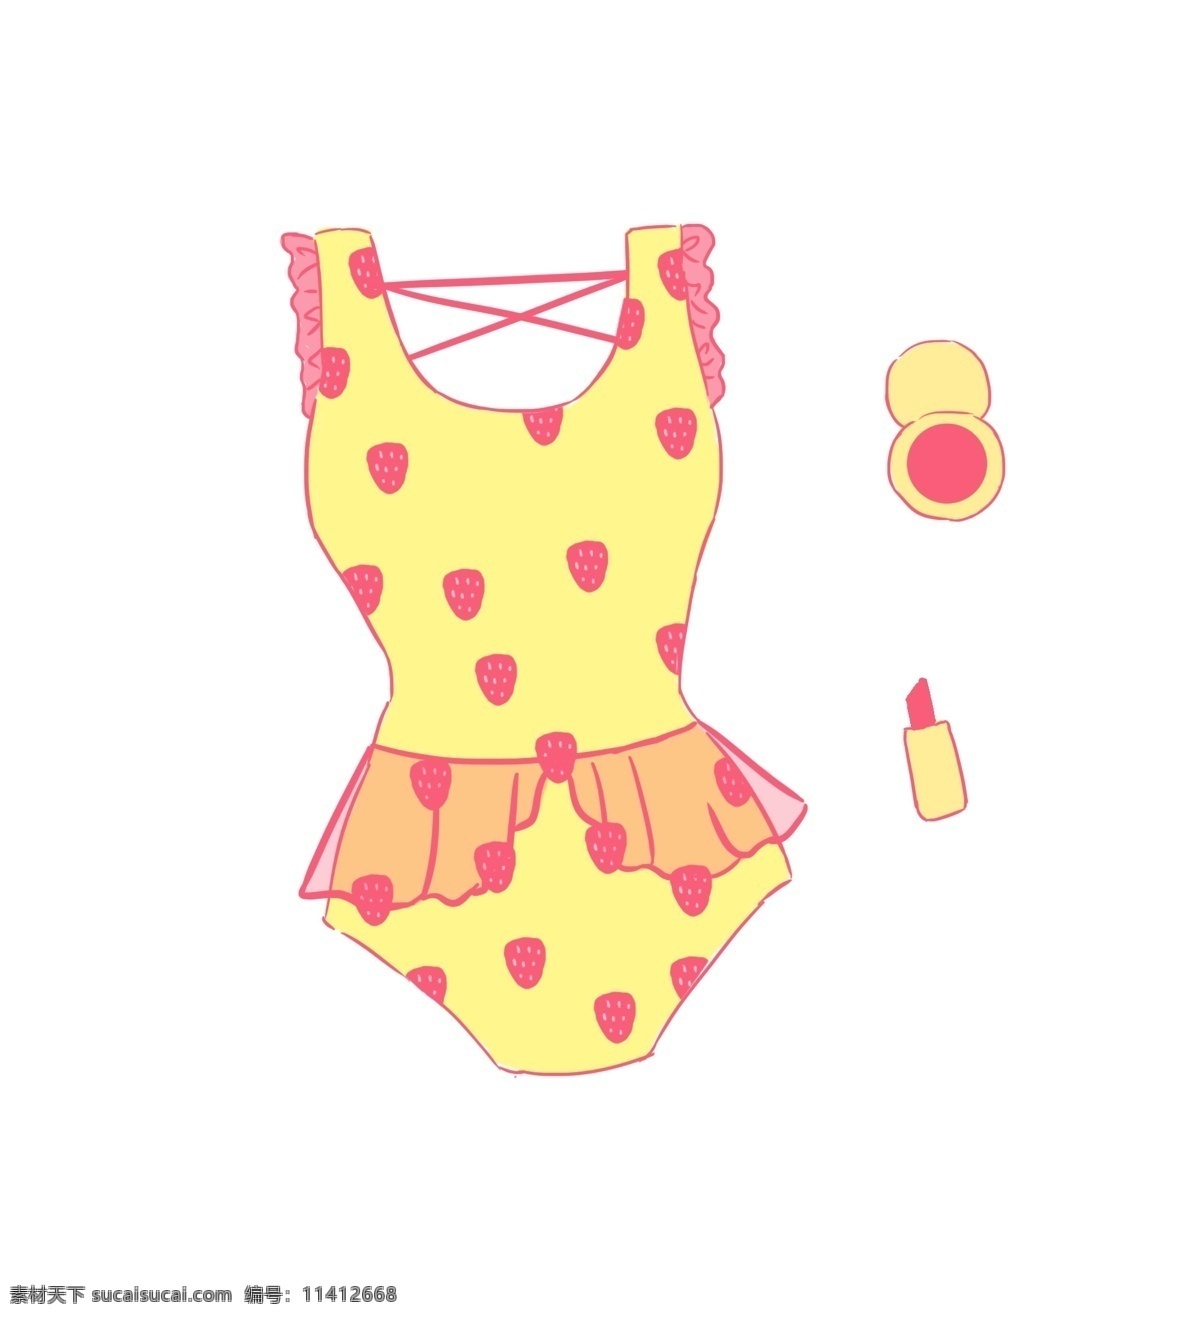 夏季 游泳衣 黄色 可爱 性感 连体 泳衣 免 扣 连体泳衣 可爱性感 沙滩